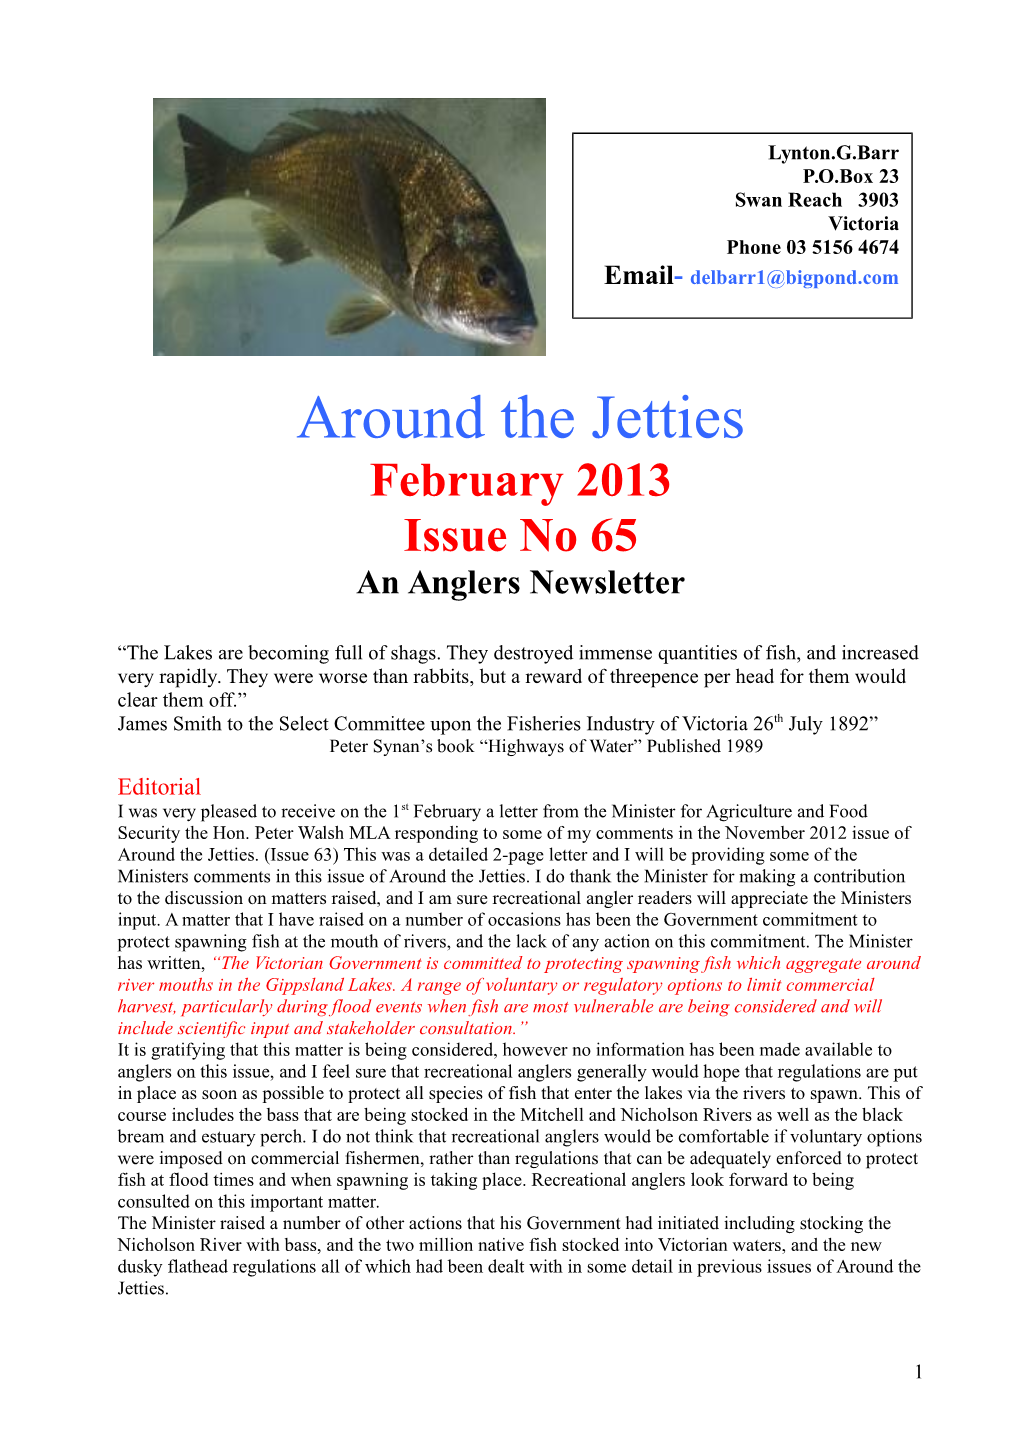 Around the Jetties 65